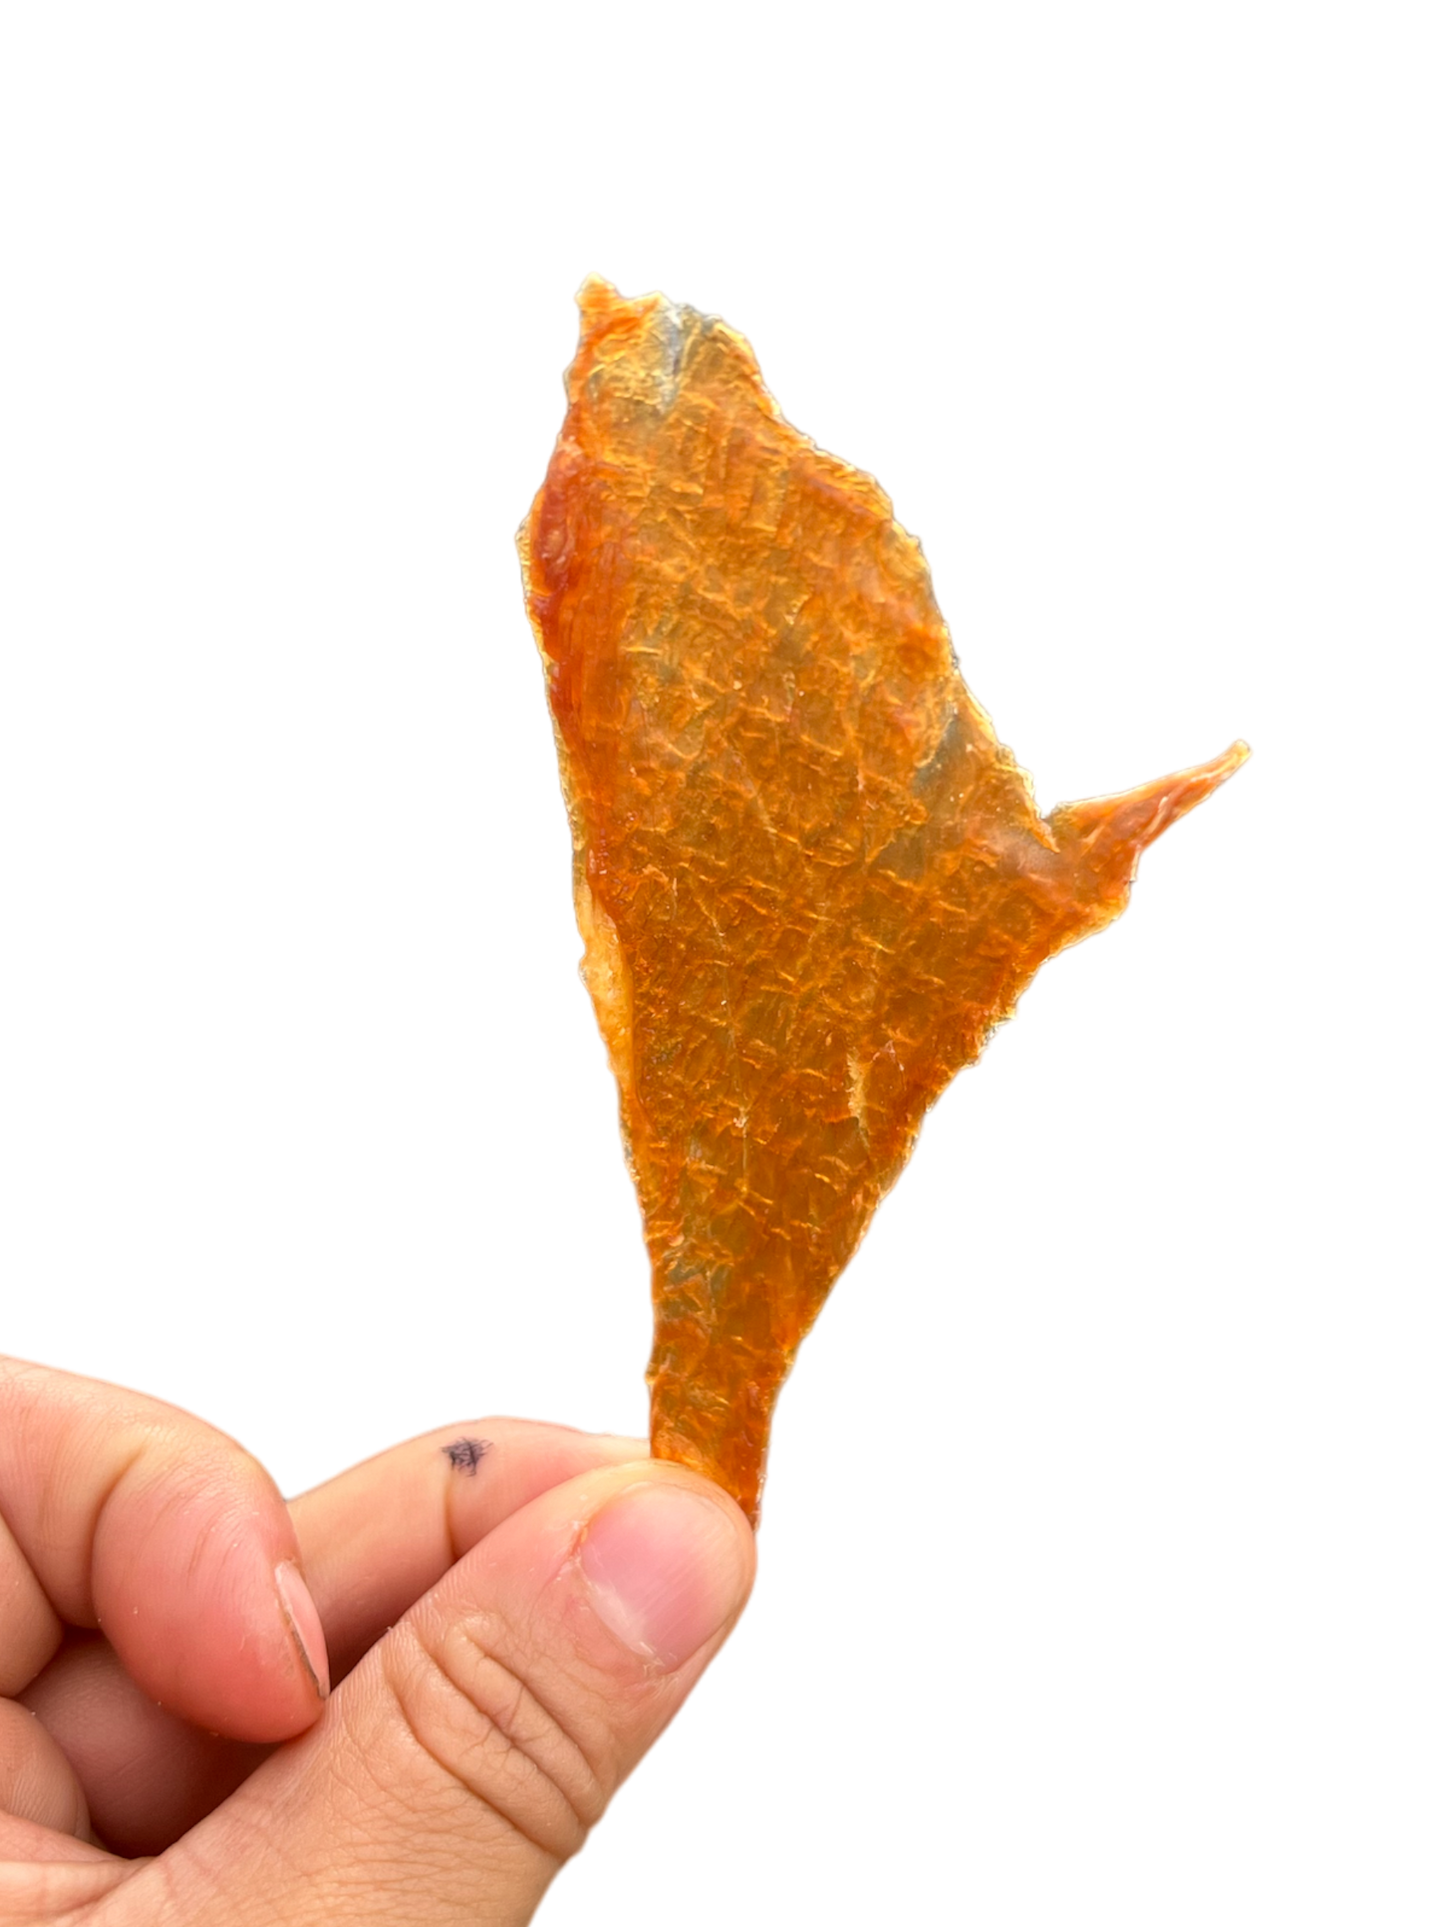 Turkey Chips (aka. ultra thin jerky)